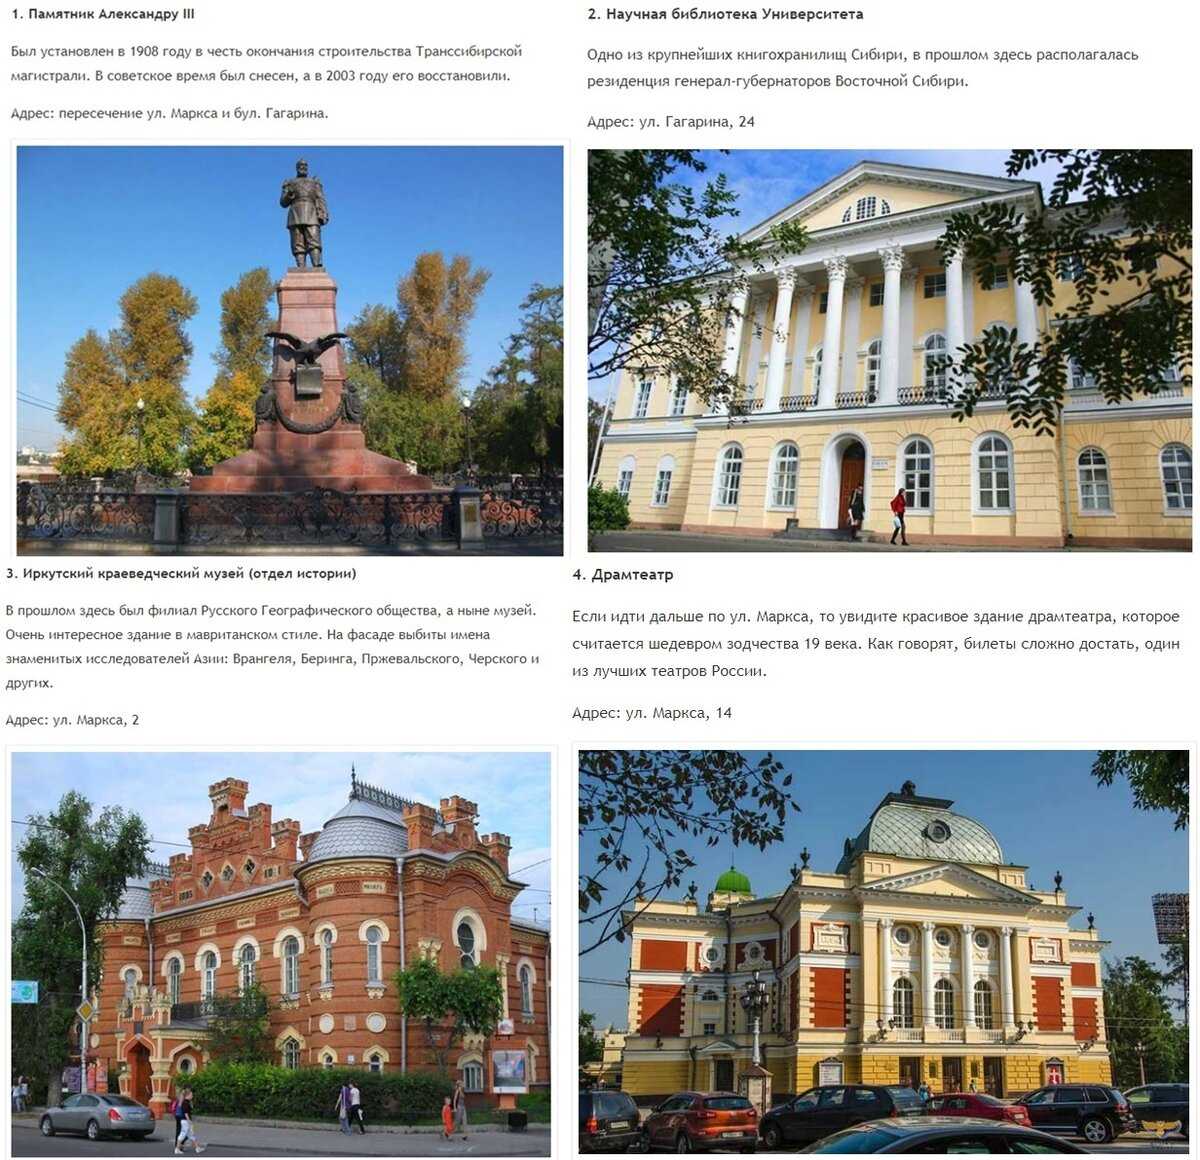 Достопримечательности иркутской области фото с названиями и описанием